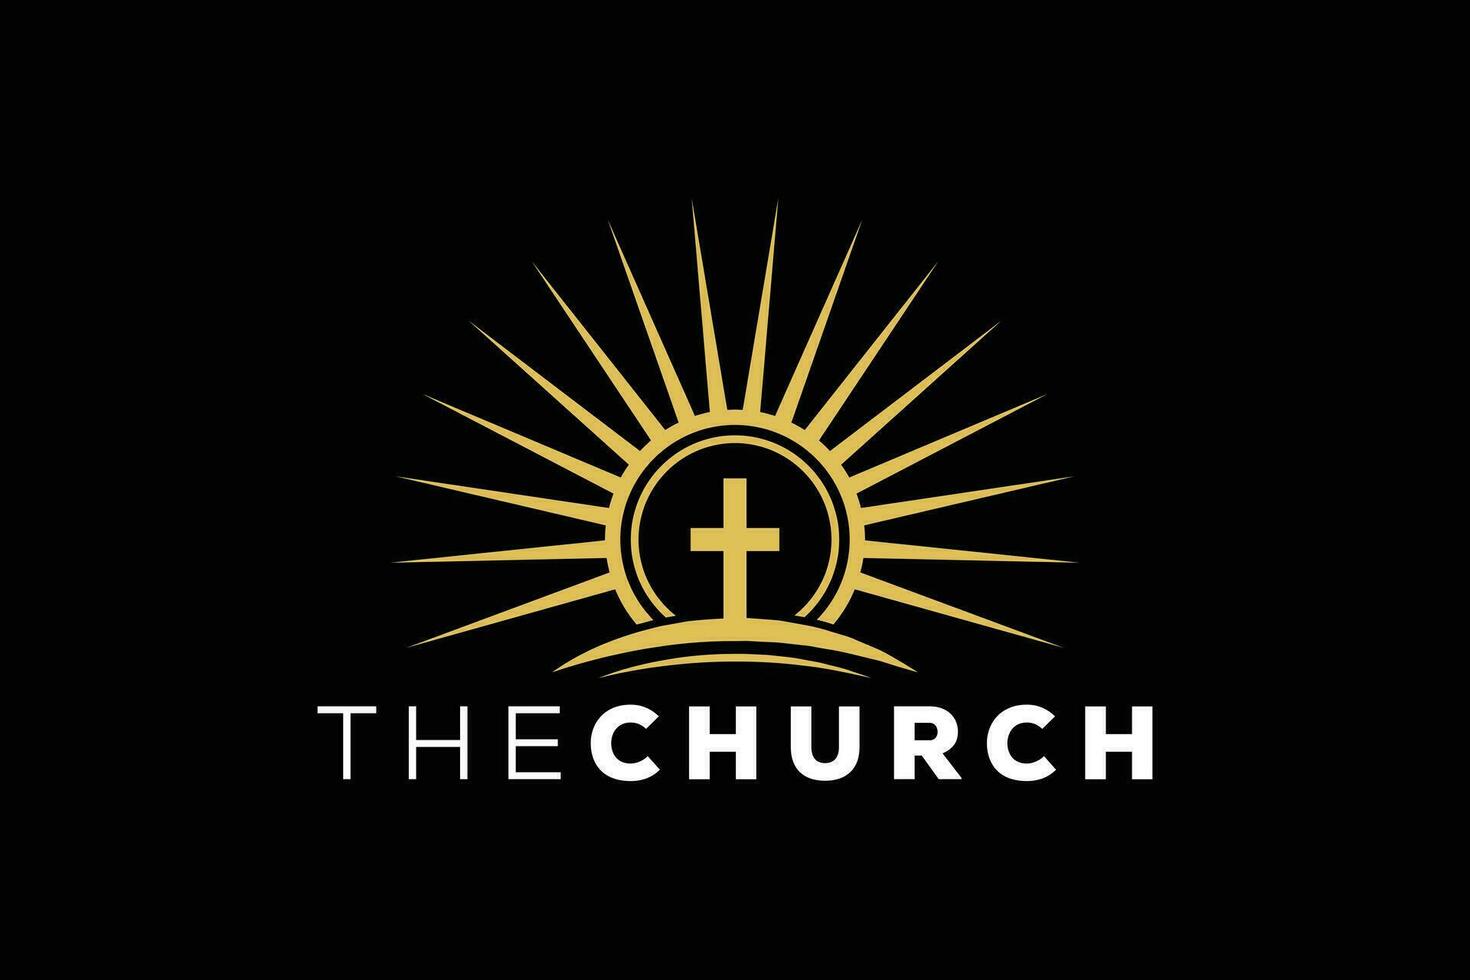 modieus professioneel en minimaal kerk teken christen en vredig vector logo ontwerp